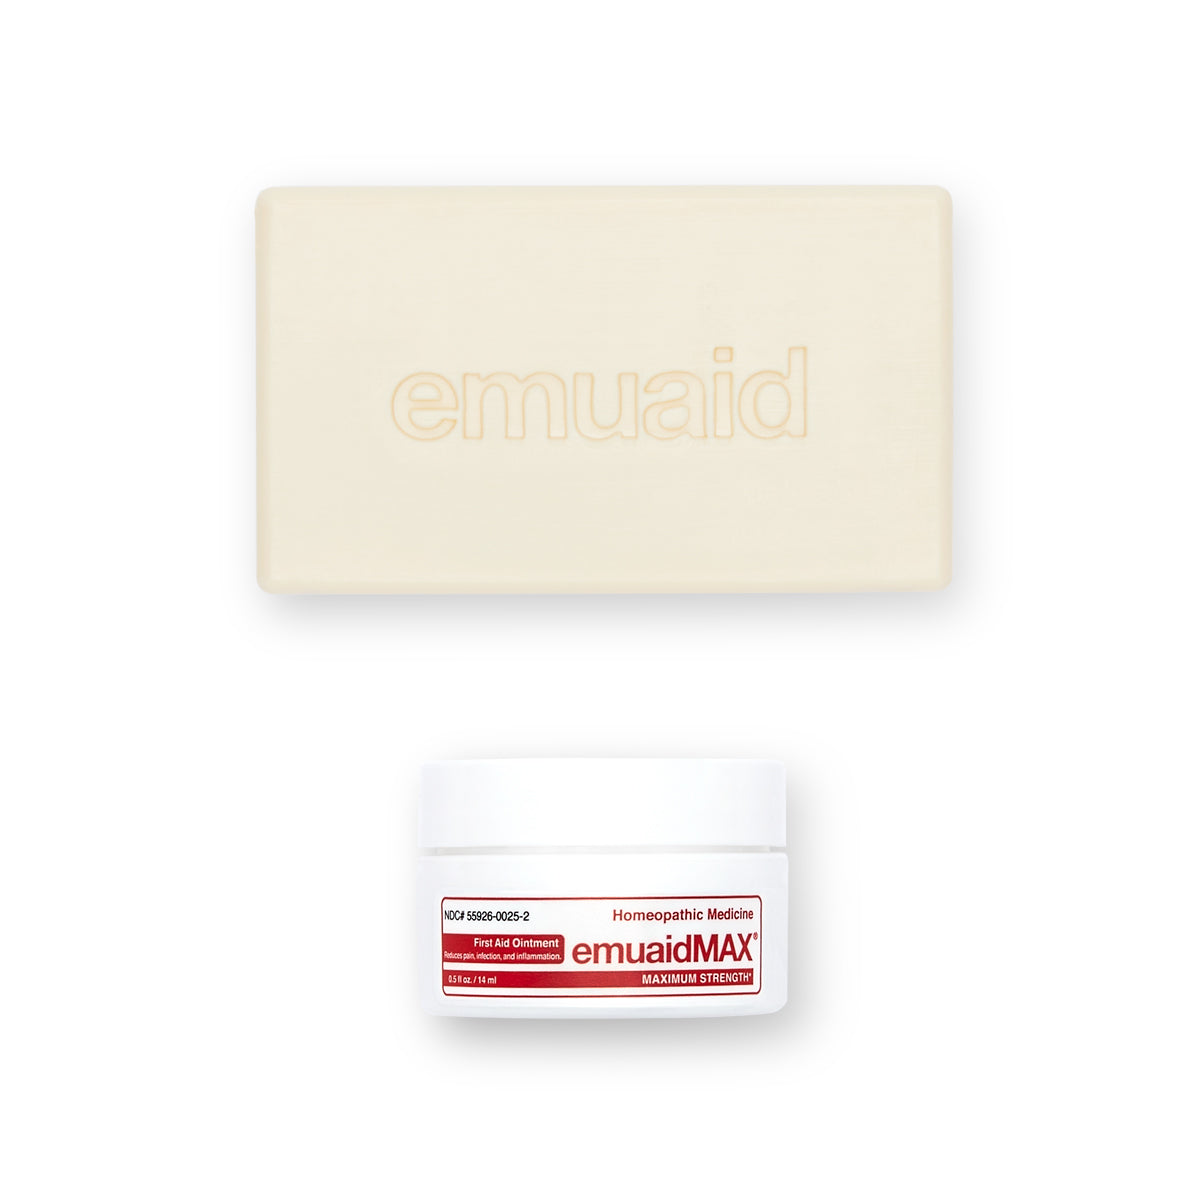 Questa è una foto di EMUAIDMAX® First Aid Ointment 2oz e di EMUAID® Therapeutic Moisture Bar.